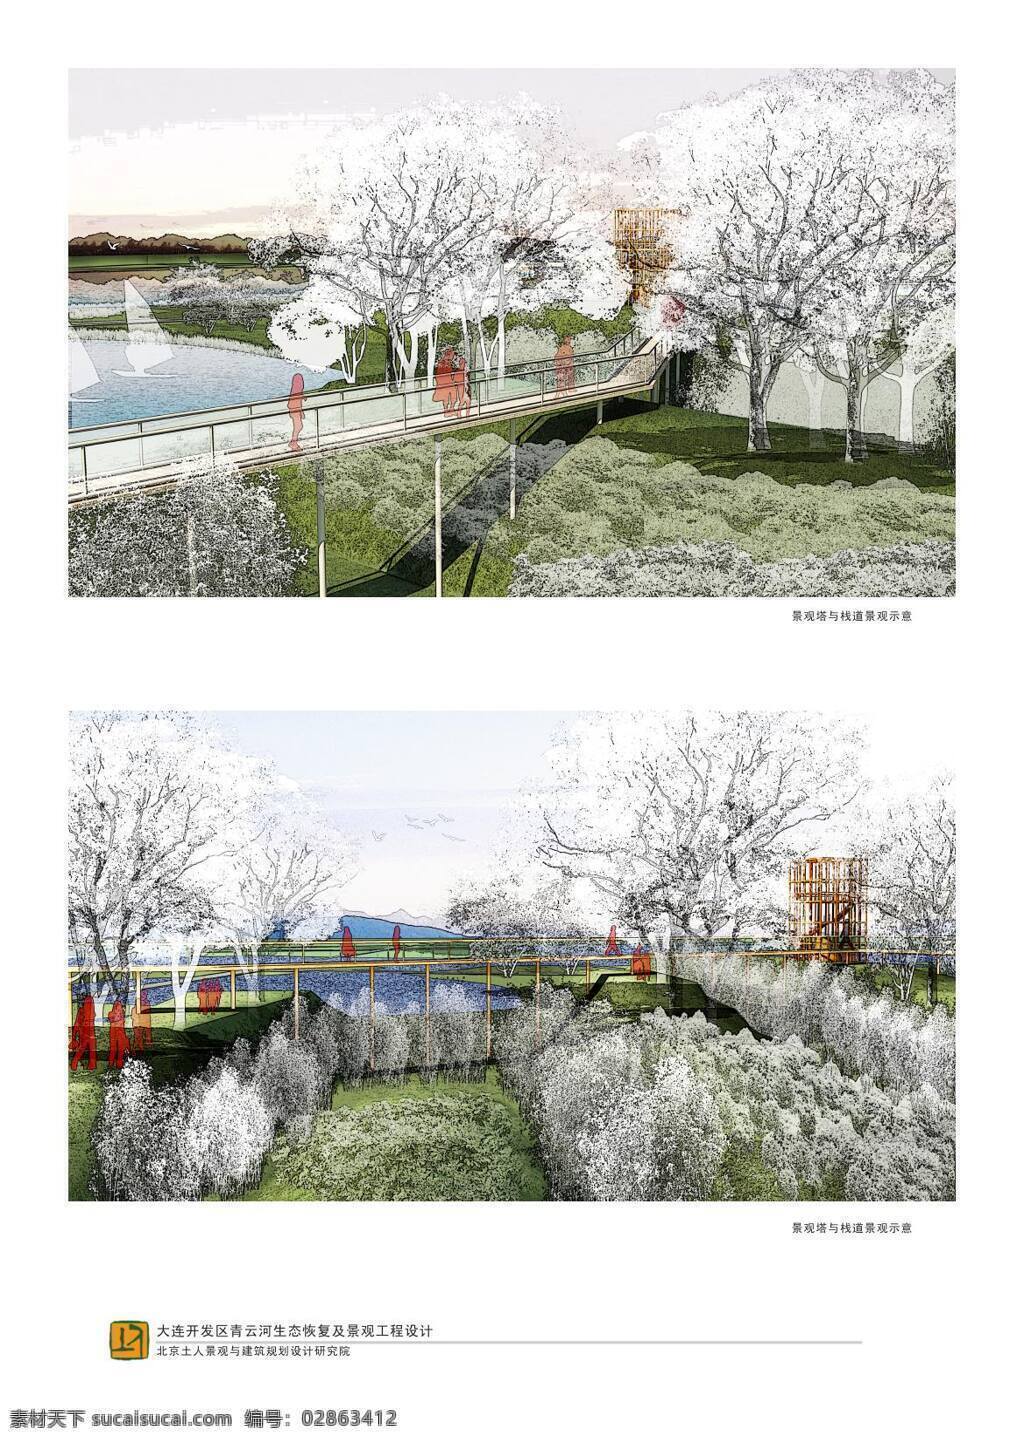 大连 青云 河 生态 治理 景观工程 北京 土人 园林 景观 方案文本 滨 水 规划 白色